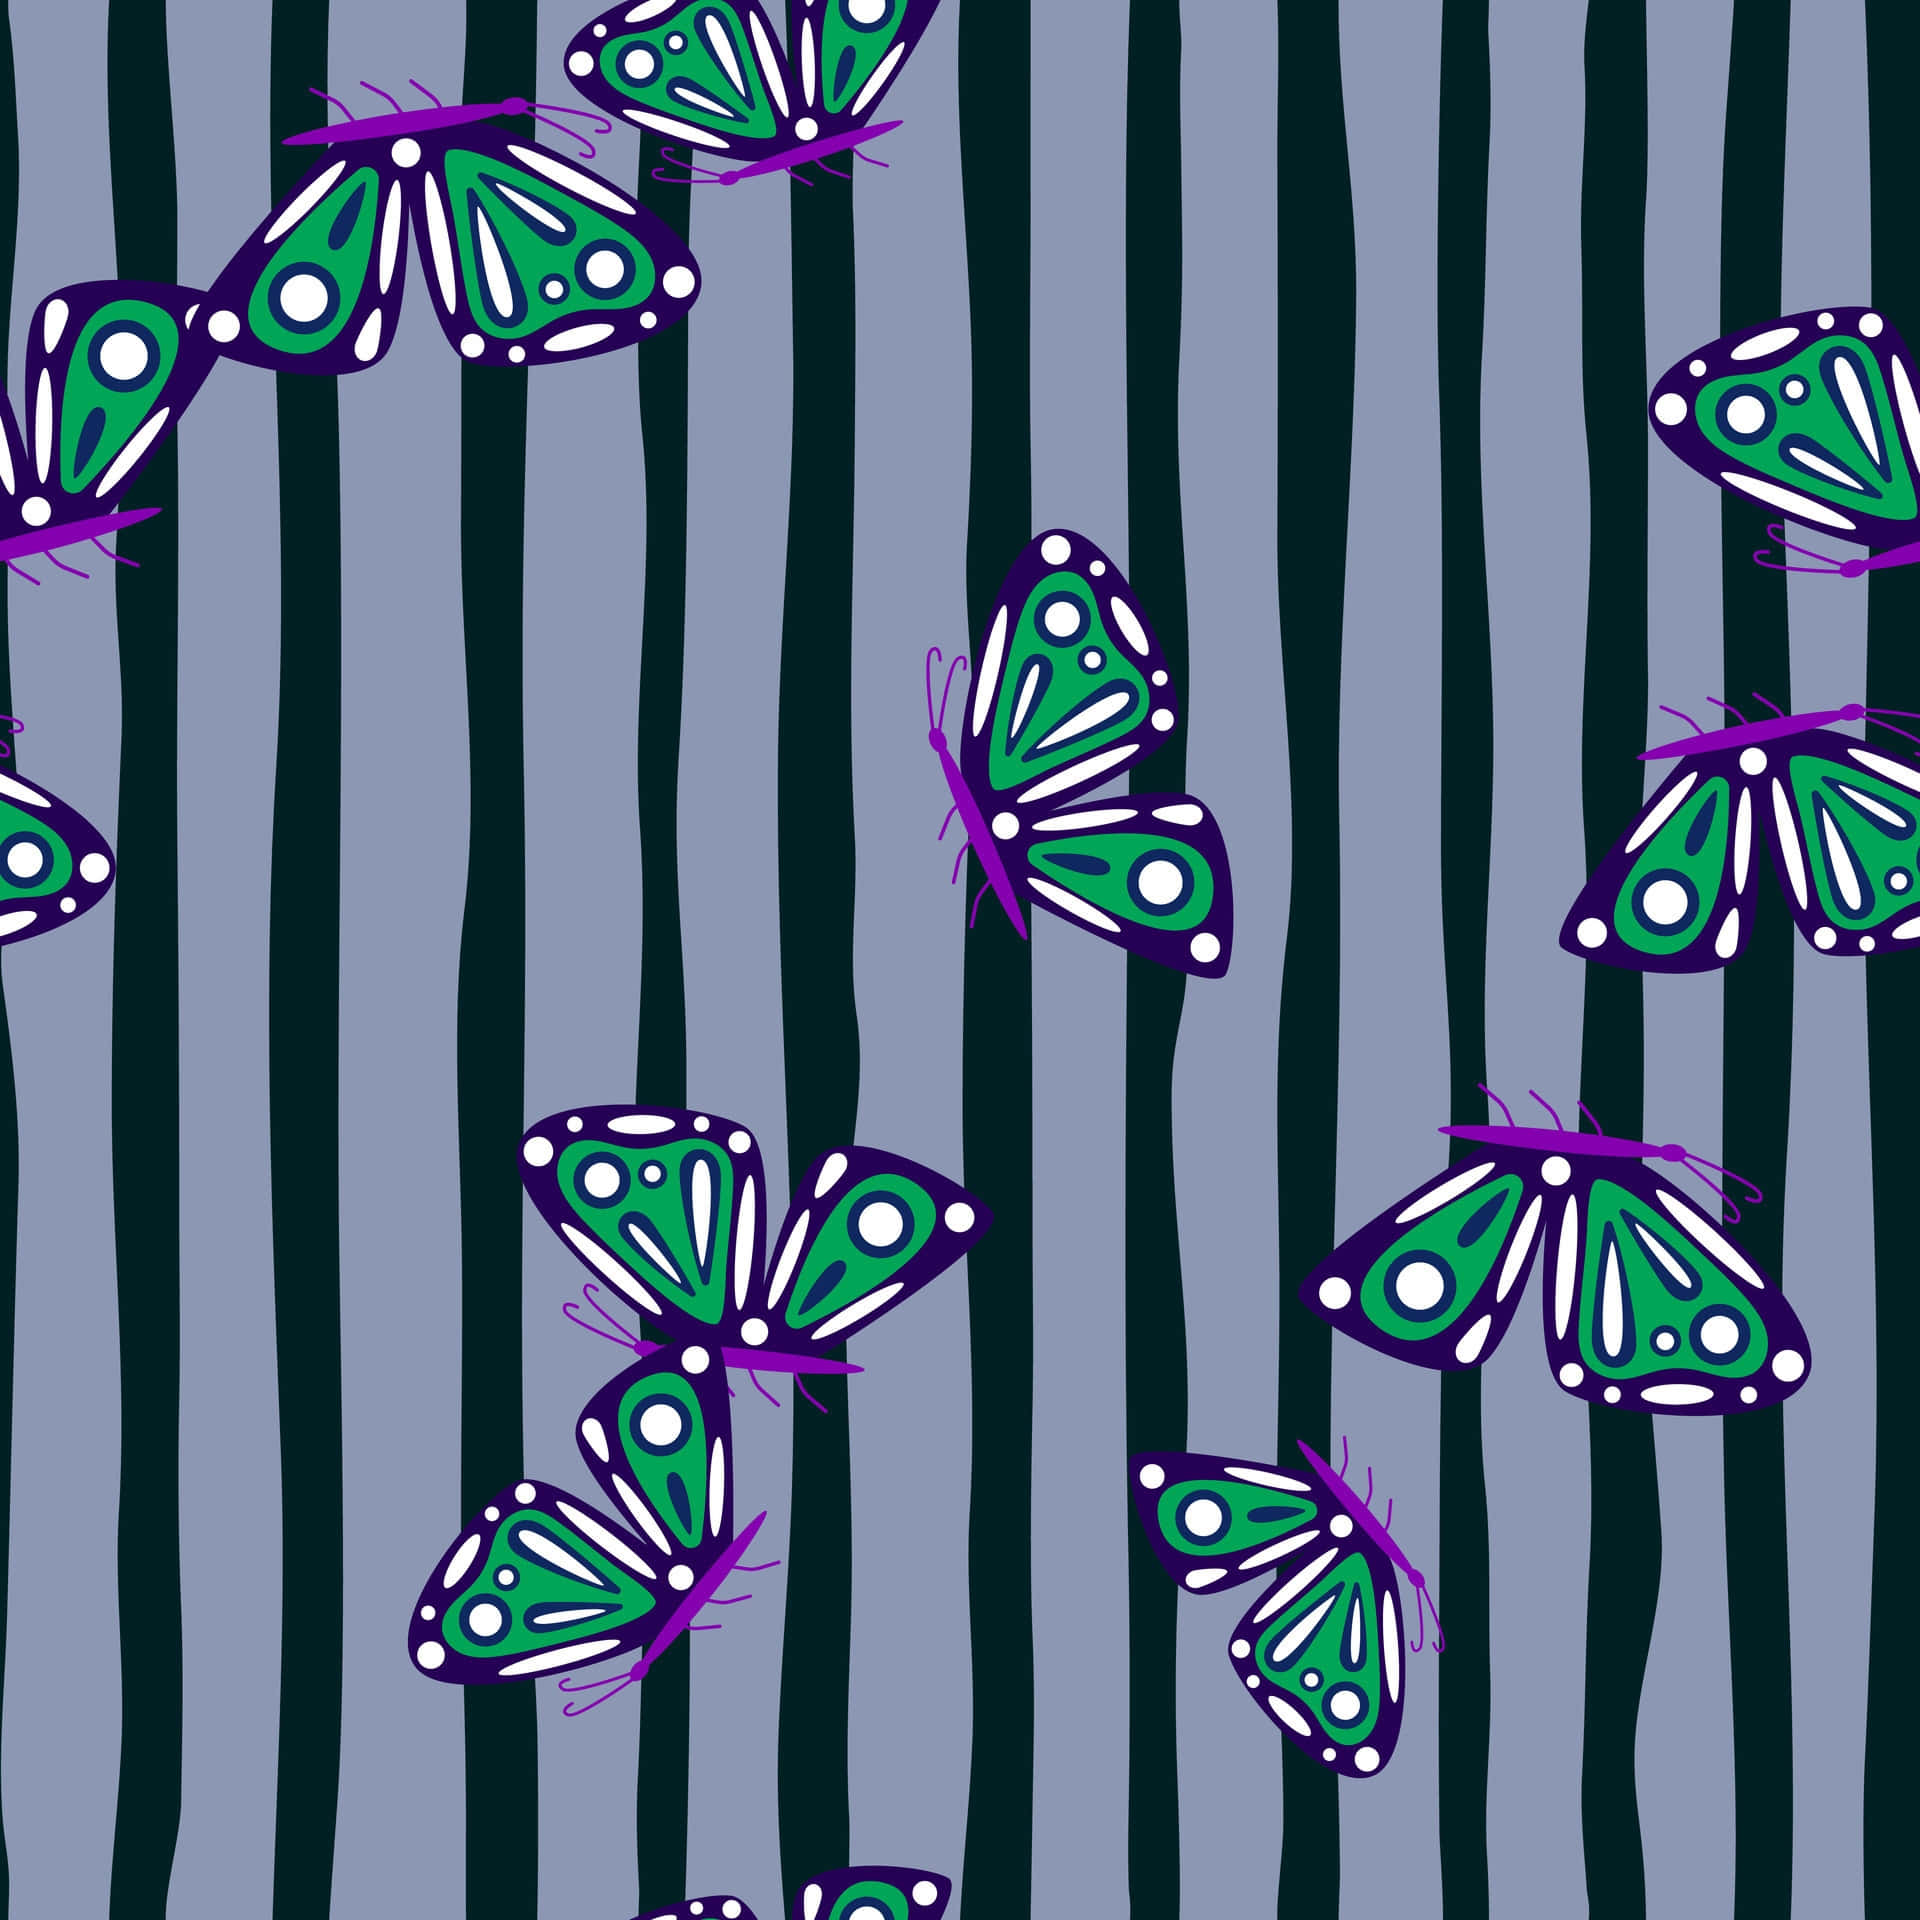 Moth Patterned Textile Design Wallpaper